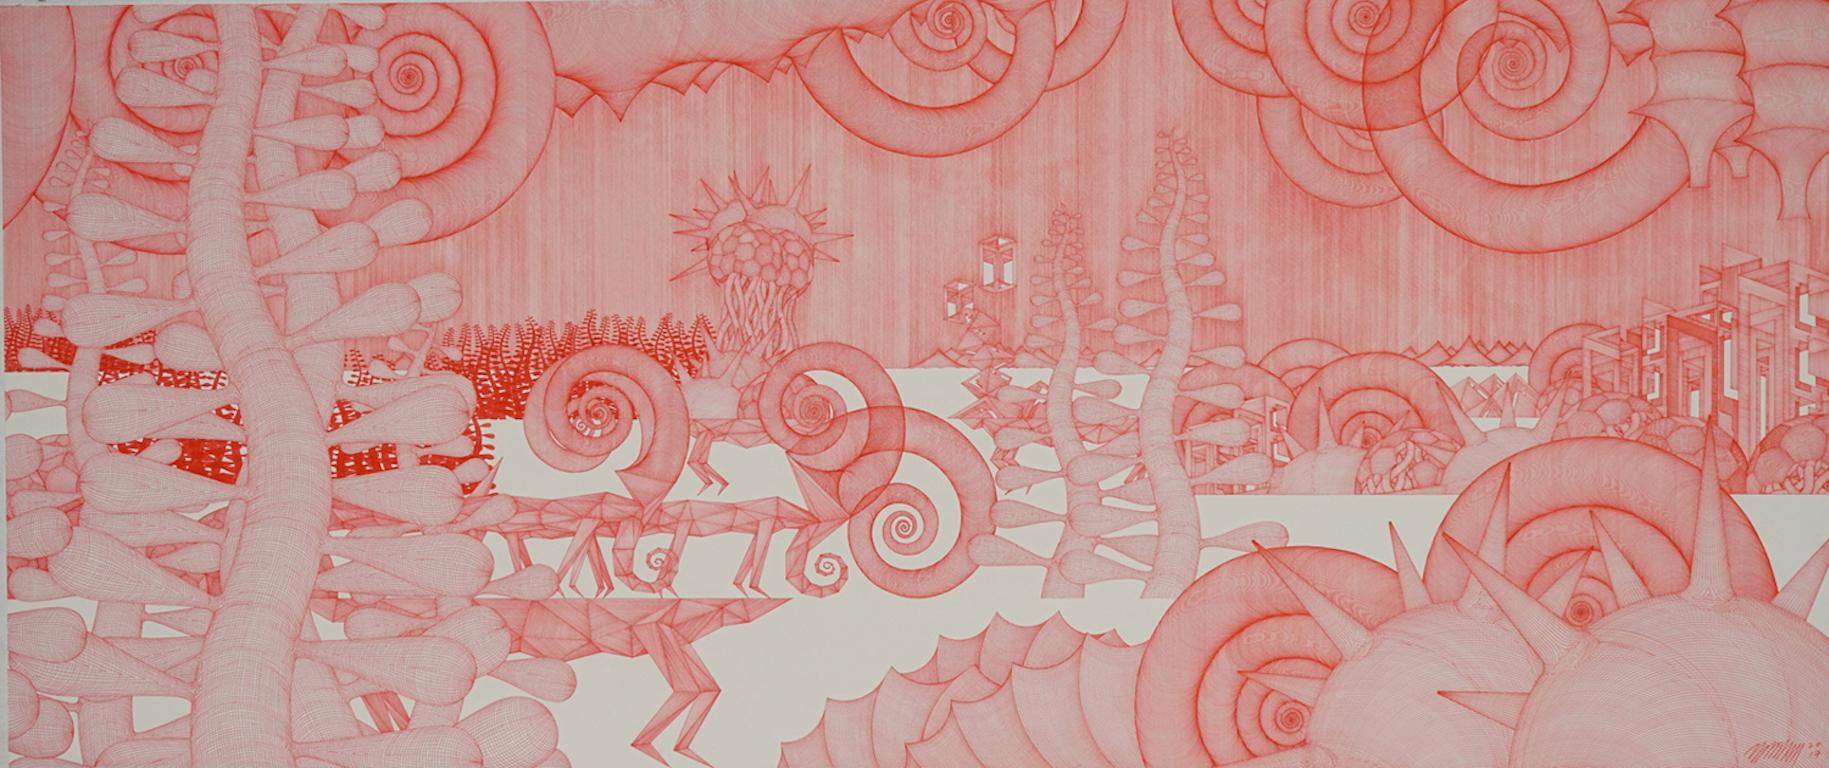 Cheolyu Kim Abstract Drawing – Journey #27 (monochromer roter Bleistift, Holz, detaillierte orientalische dansaekhwa)